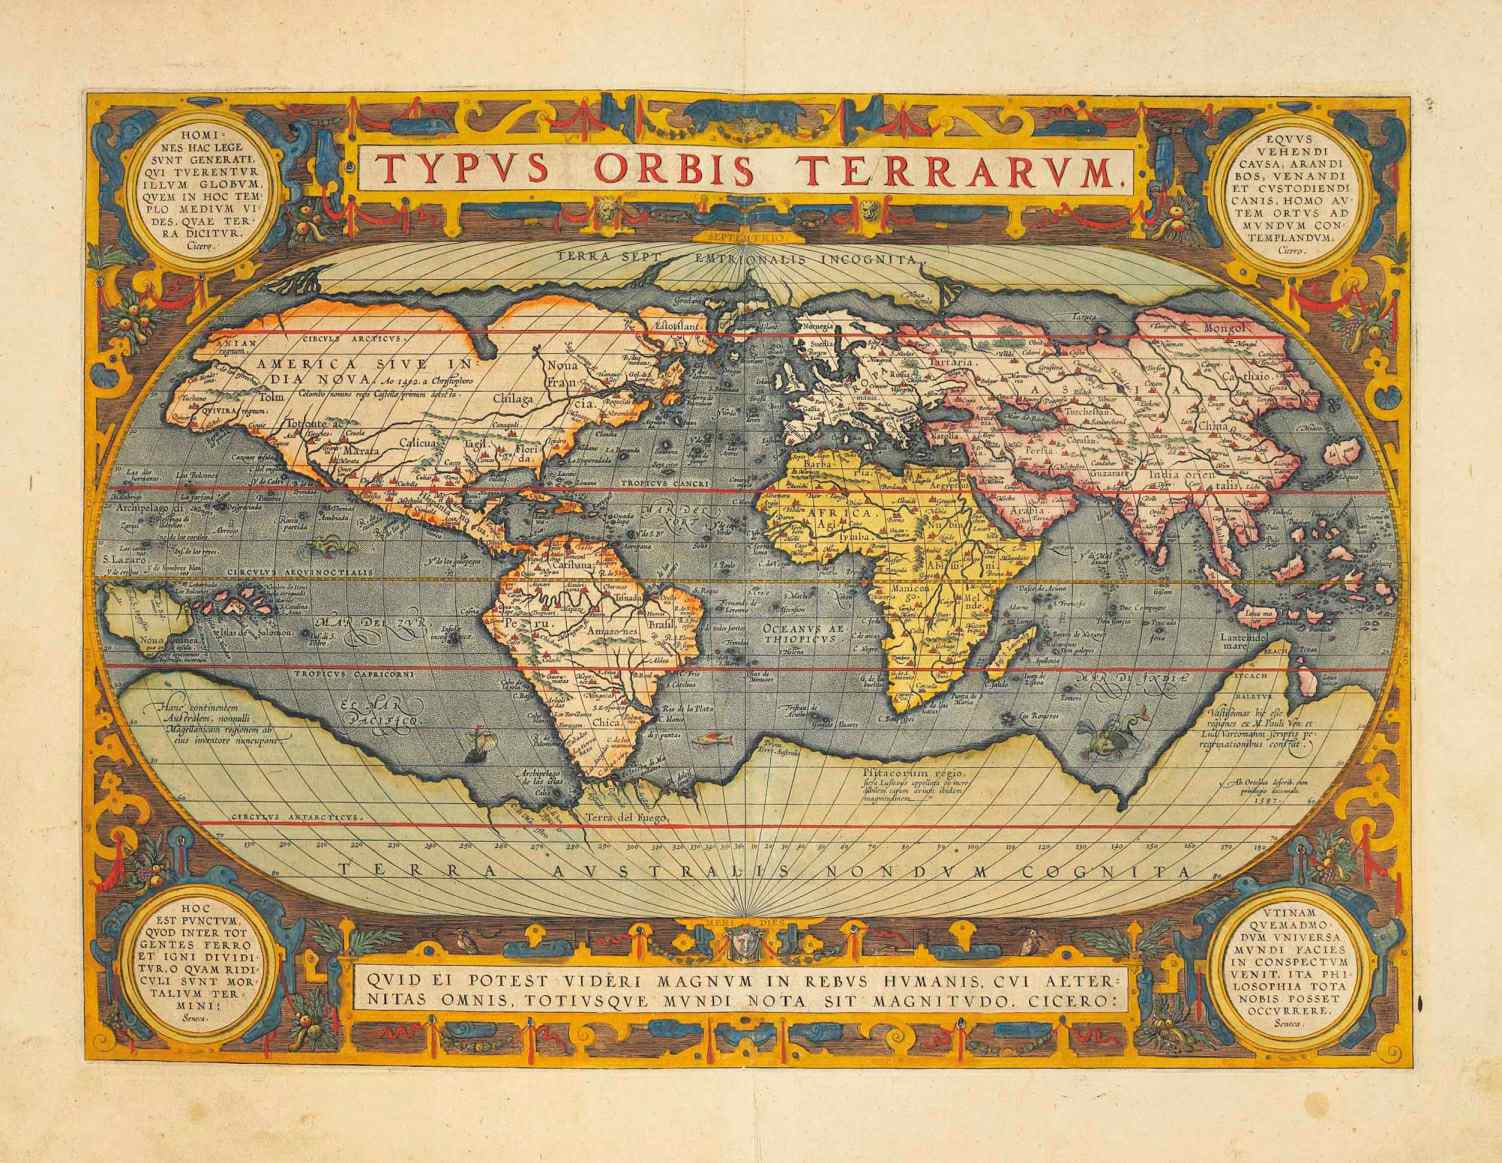 Ezen az 1570-es térképen Hyperborea-t sarkvidéki kontinensként mutatják be, és "Terra Septemtrionalis Incognita" (ismeretlen északi föld) néven írják le.